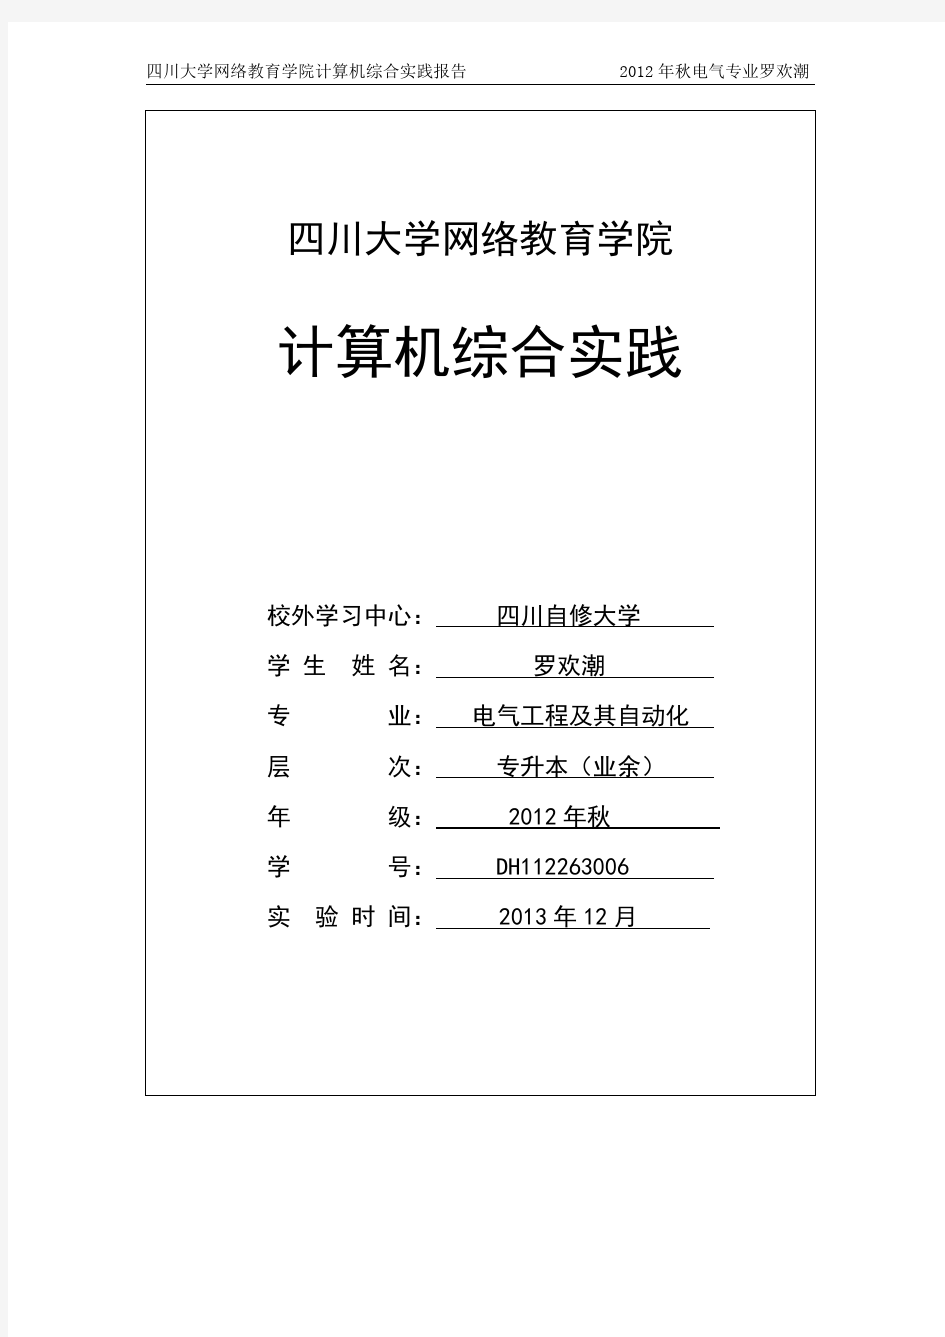 四川大学网络教育学院 计算机综合实践报告(全部5个实验)